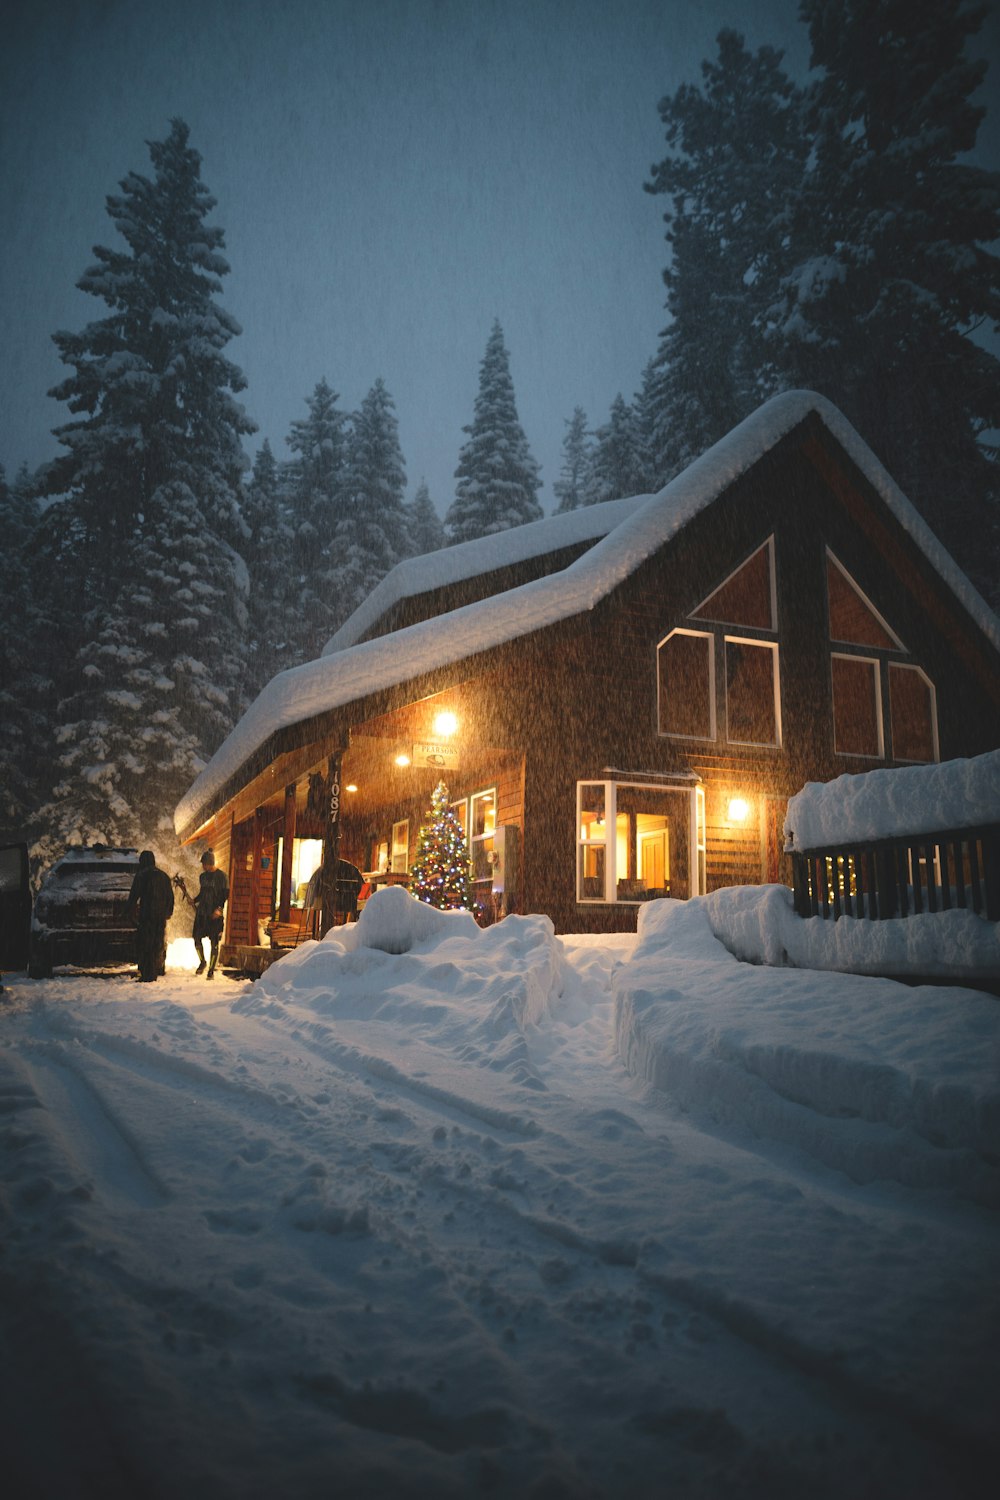 雪に覆われた家